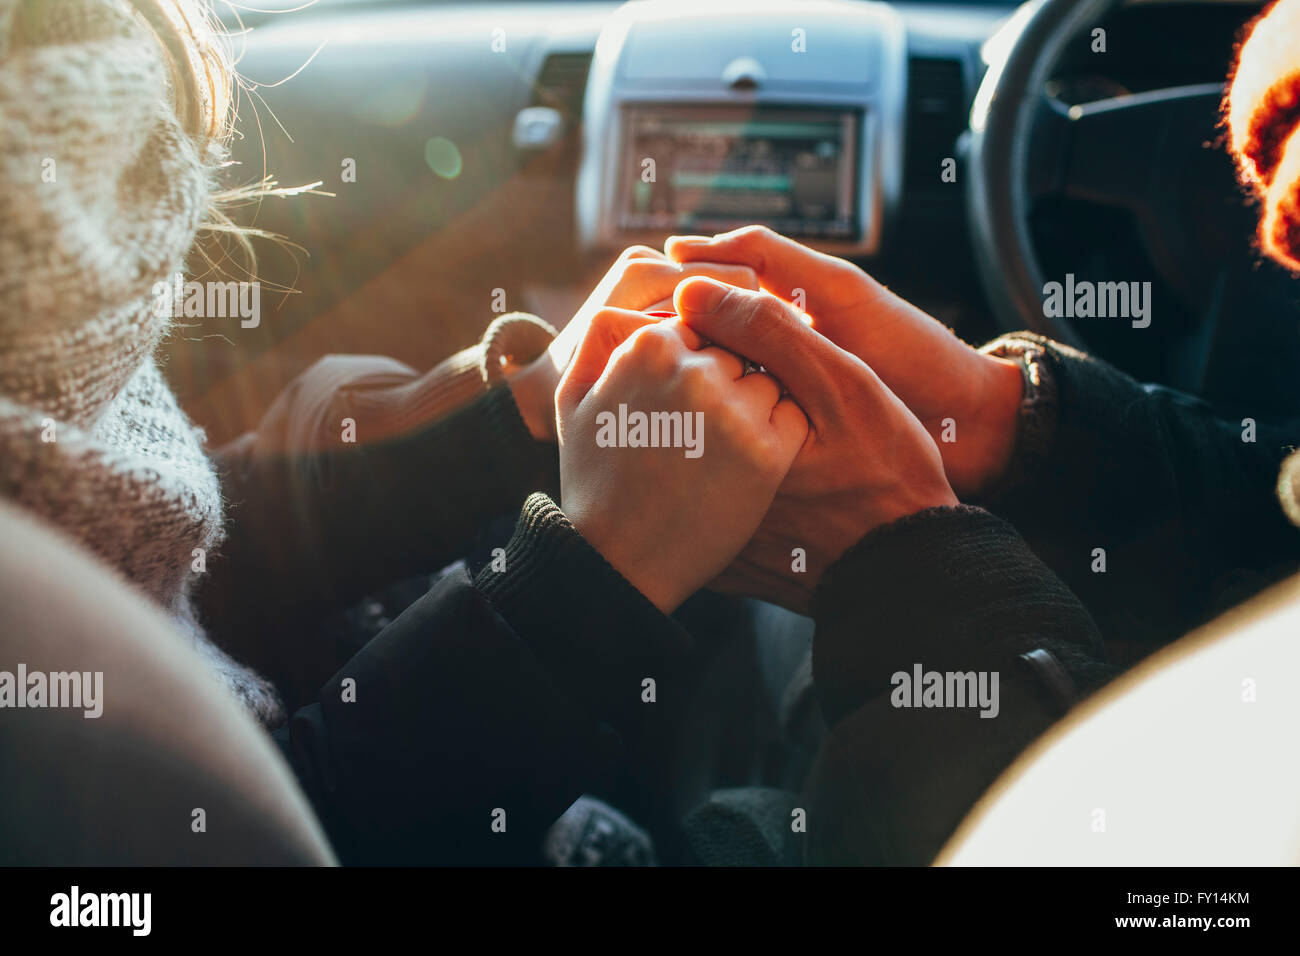 Bild von paar Hand in Hand im Auto beschnitten Stockfoto